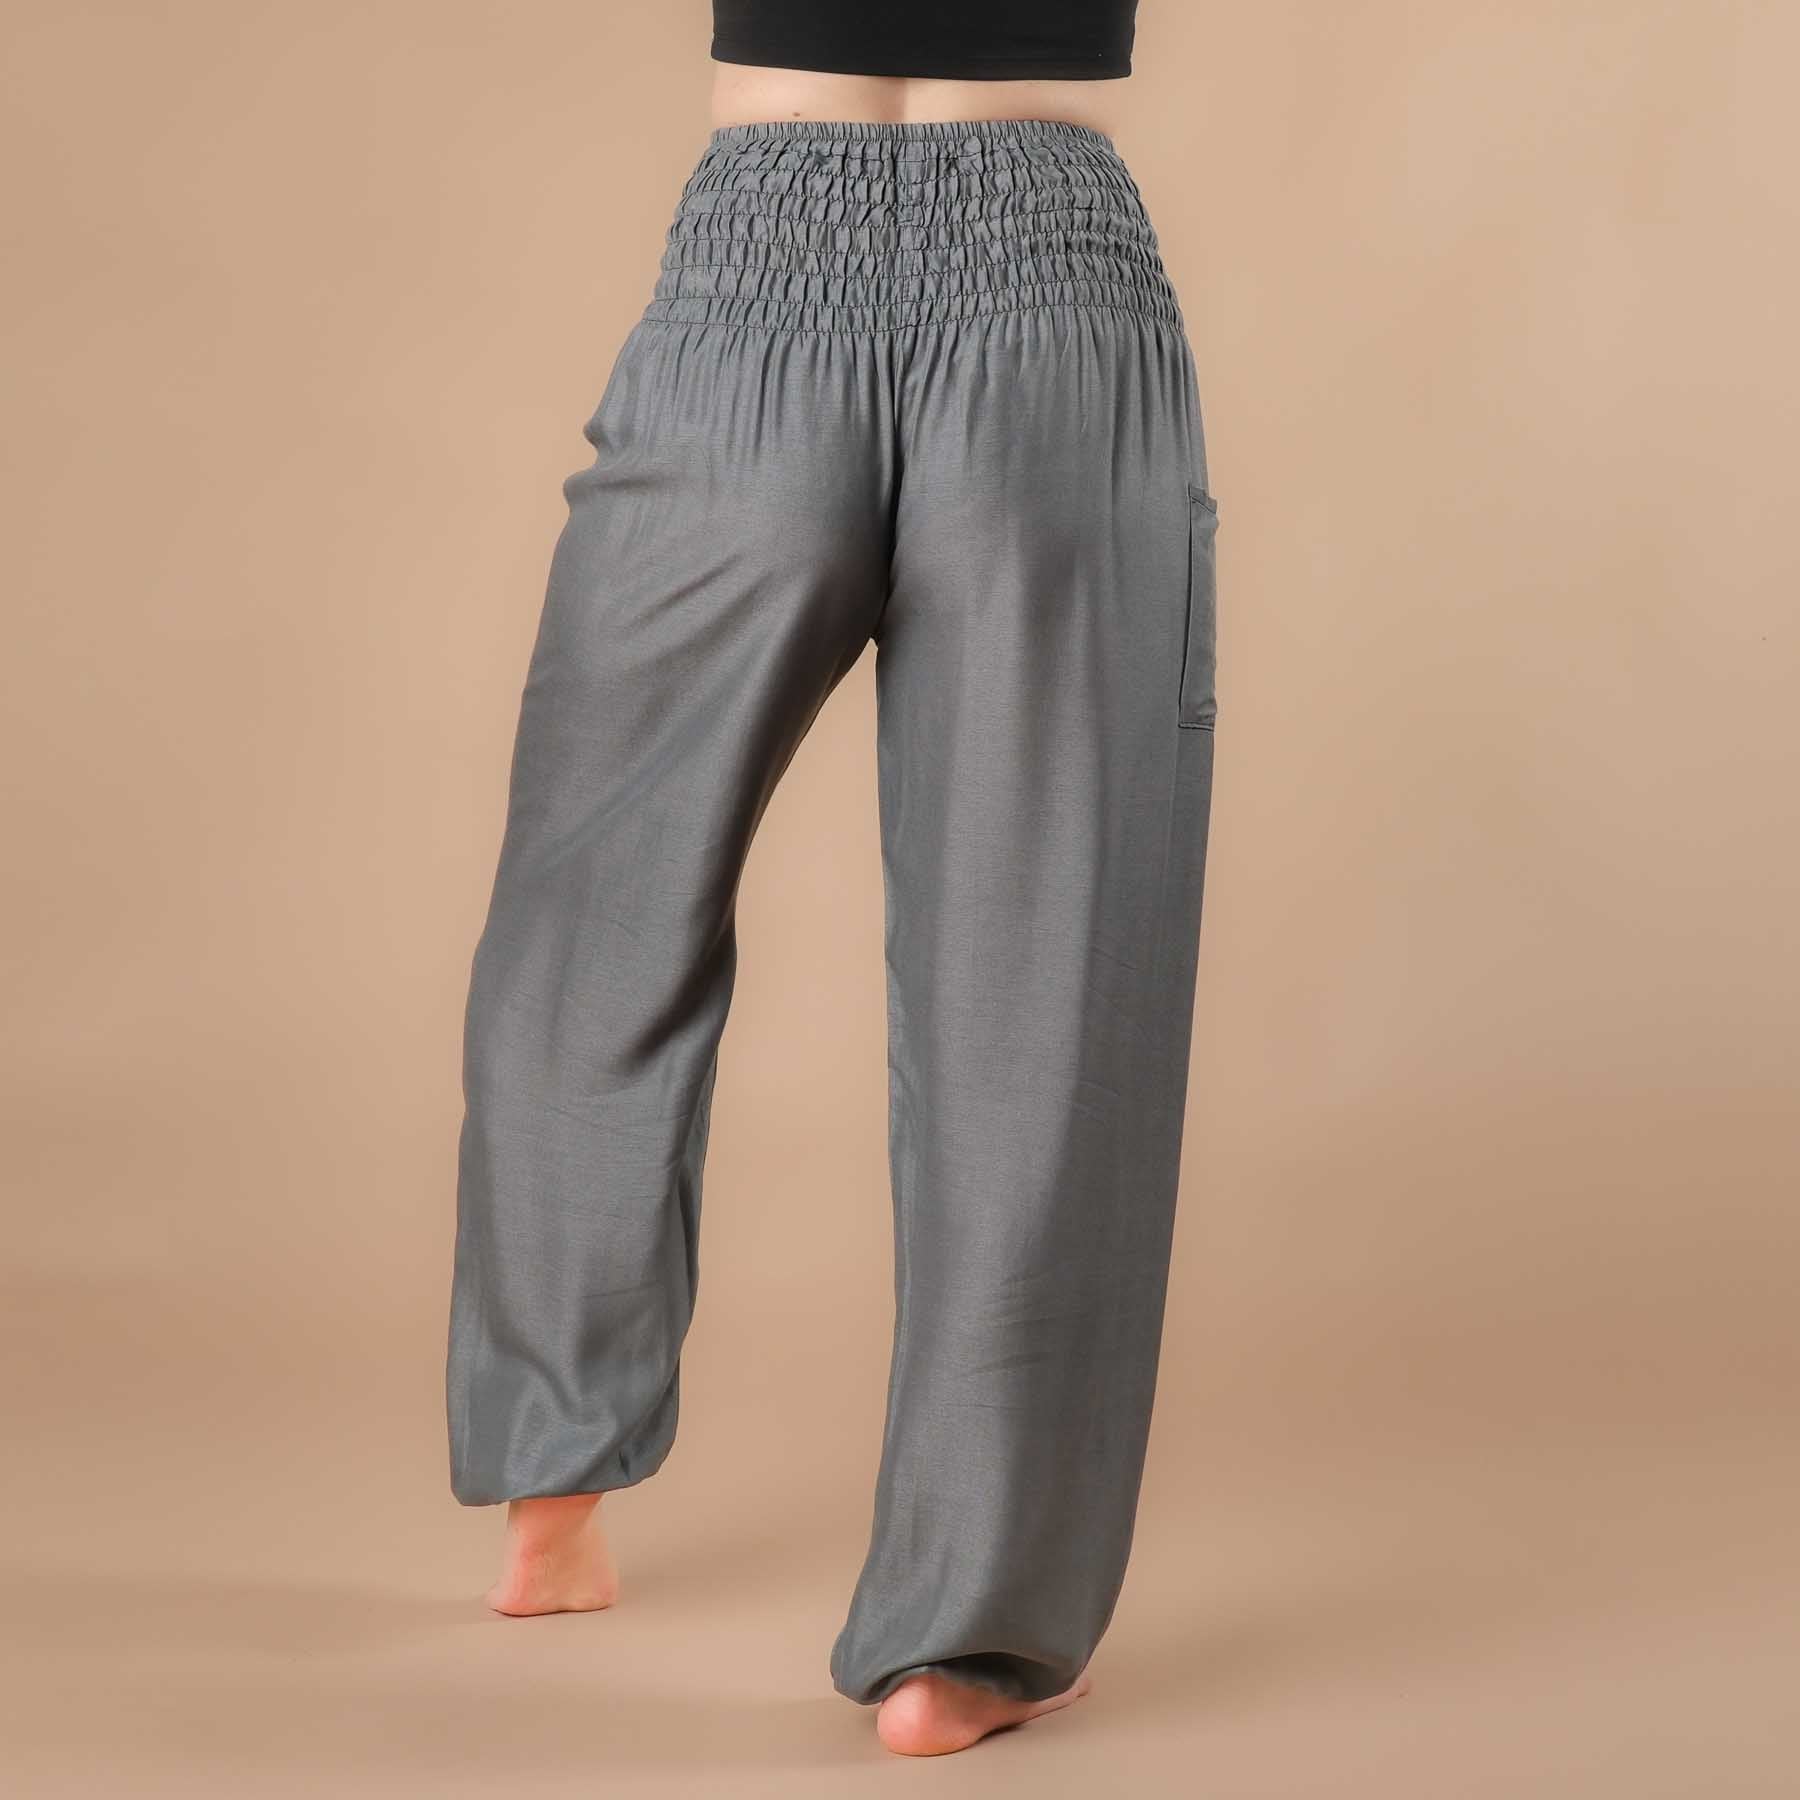 Pantaloni harem yoga uni grey